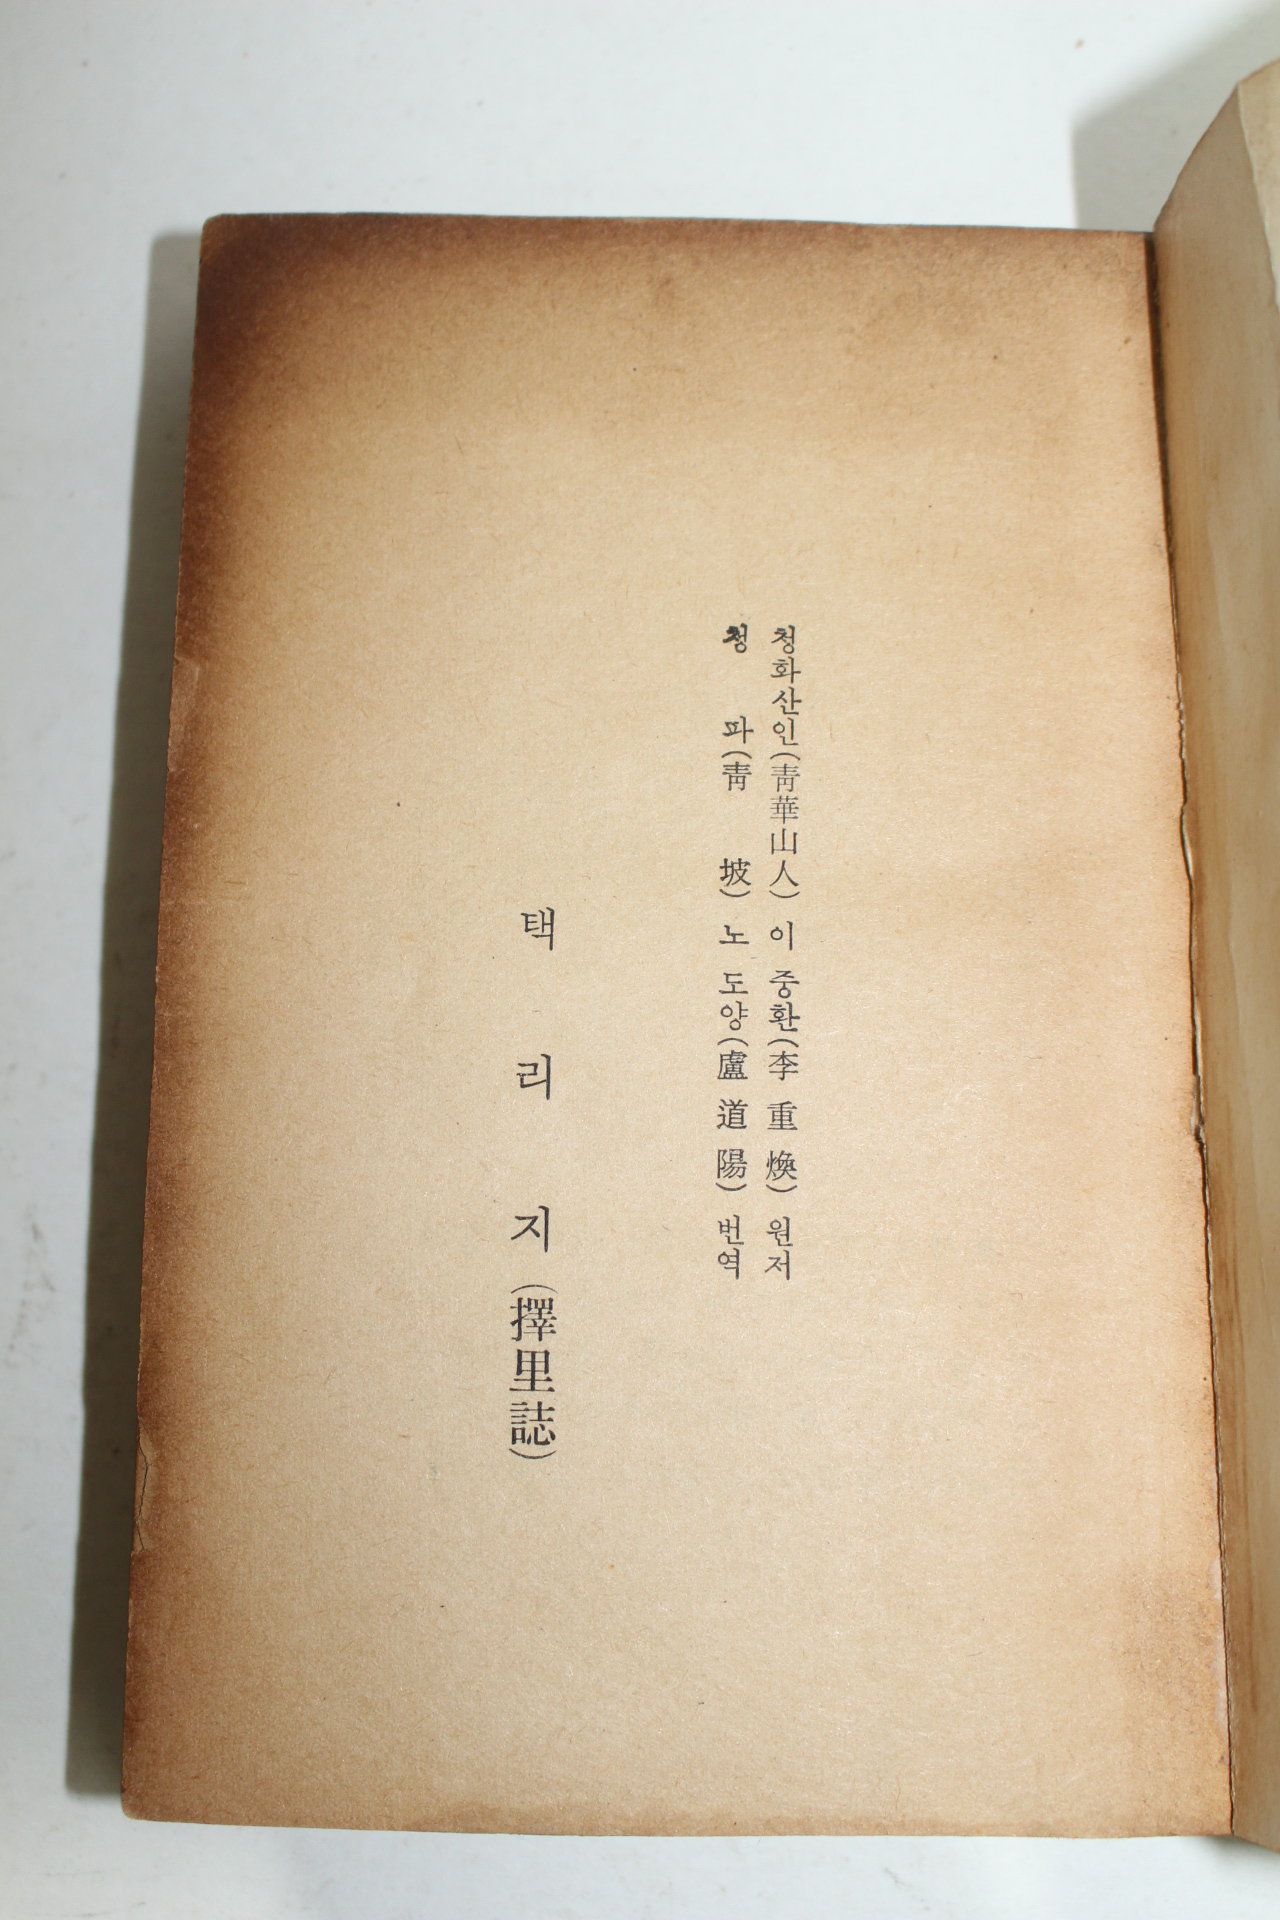 1972년 이중환(李重煥), 노도양(盧道陽)역 택리지(擇里誌)